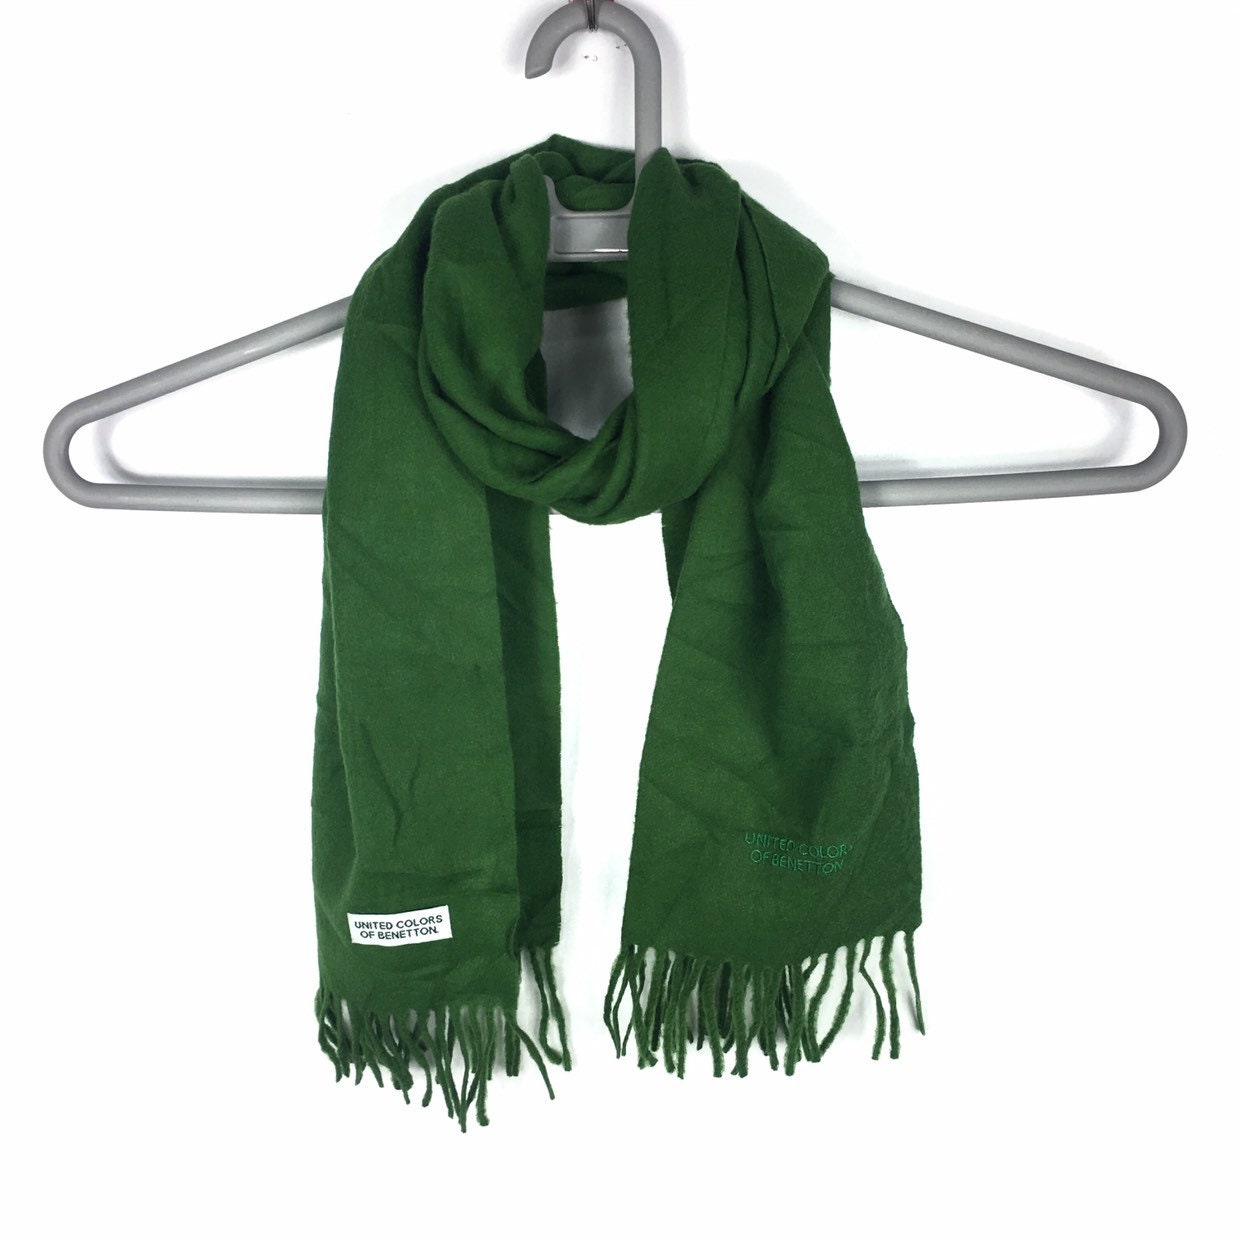 United Colour of Benetton sjaal gratis volwassen maat - Nederland